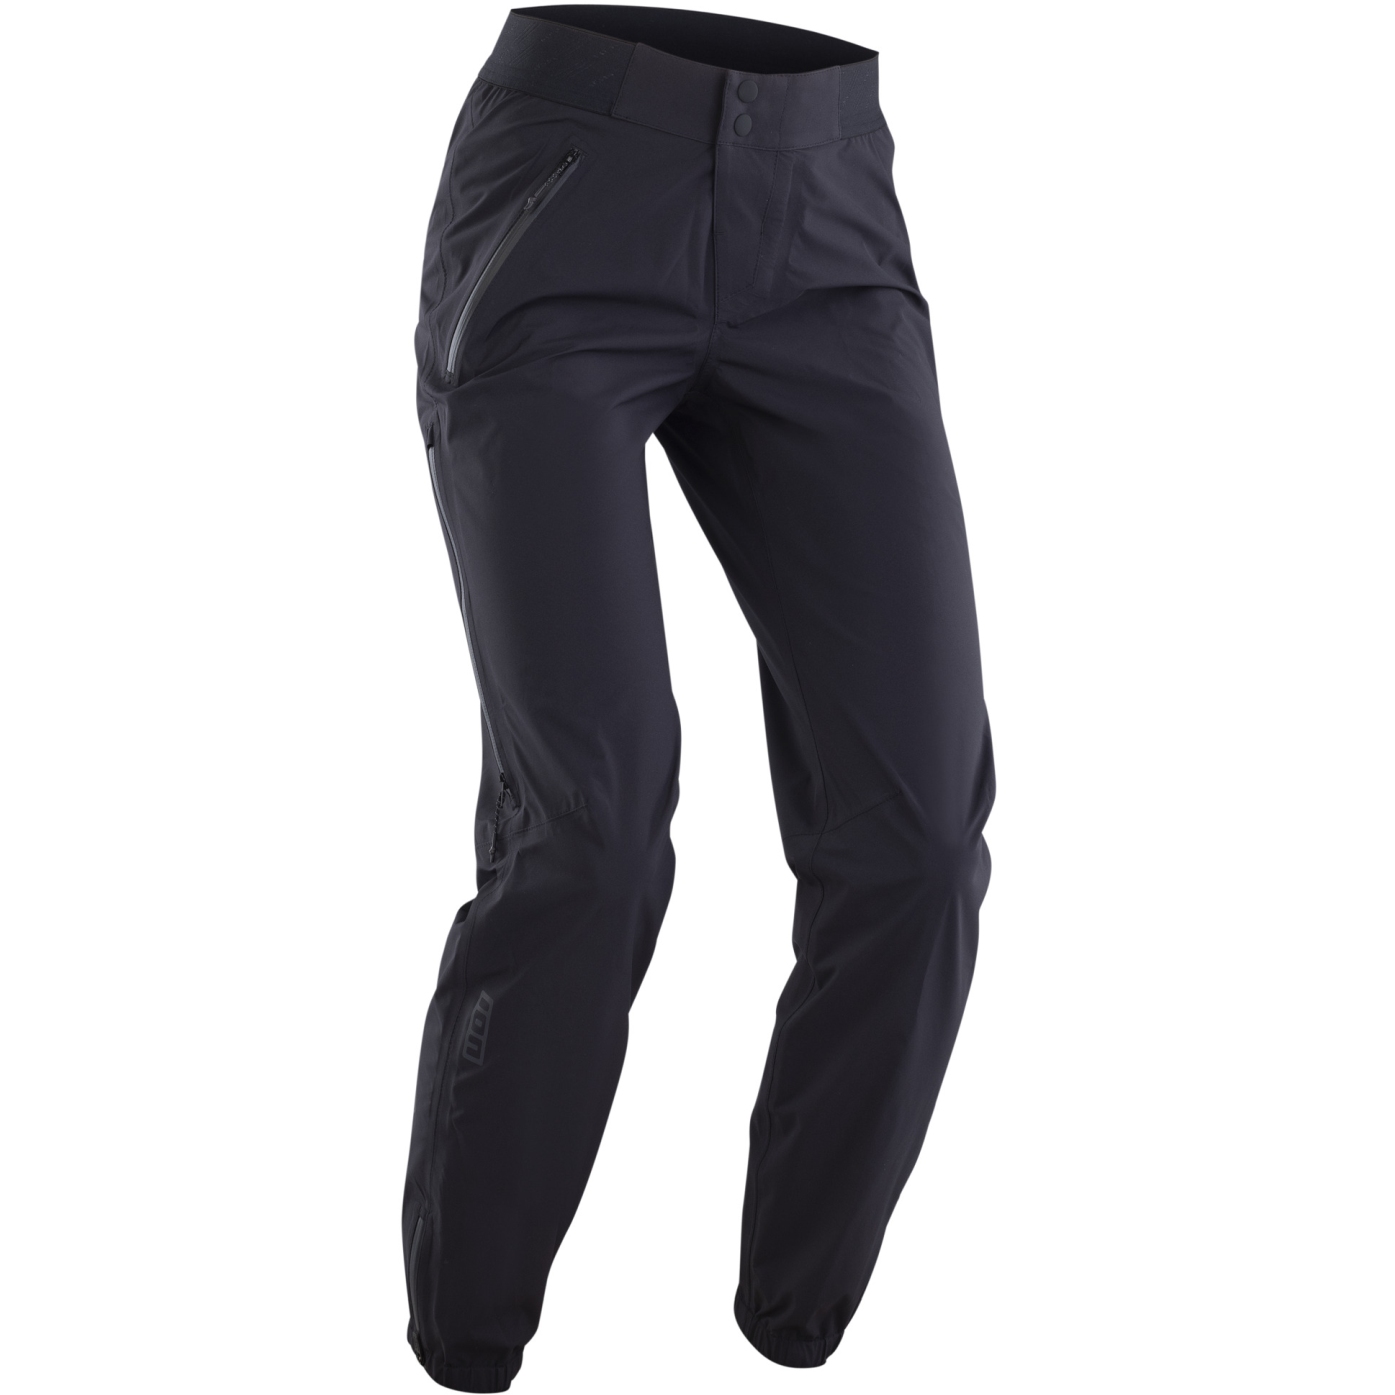 Imagen de ION Bike Outerwear 2.5 Capas Pantalones Impermeables - Shelter Lite - Negro